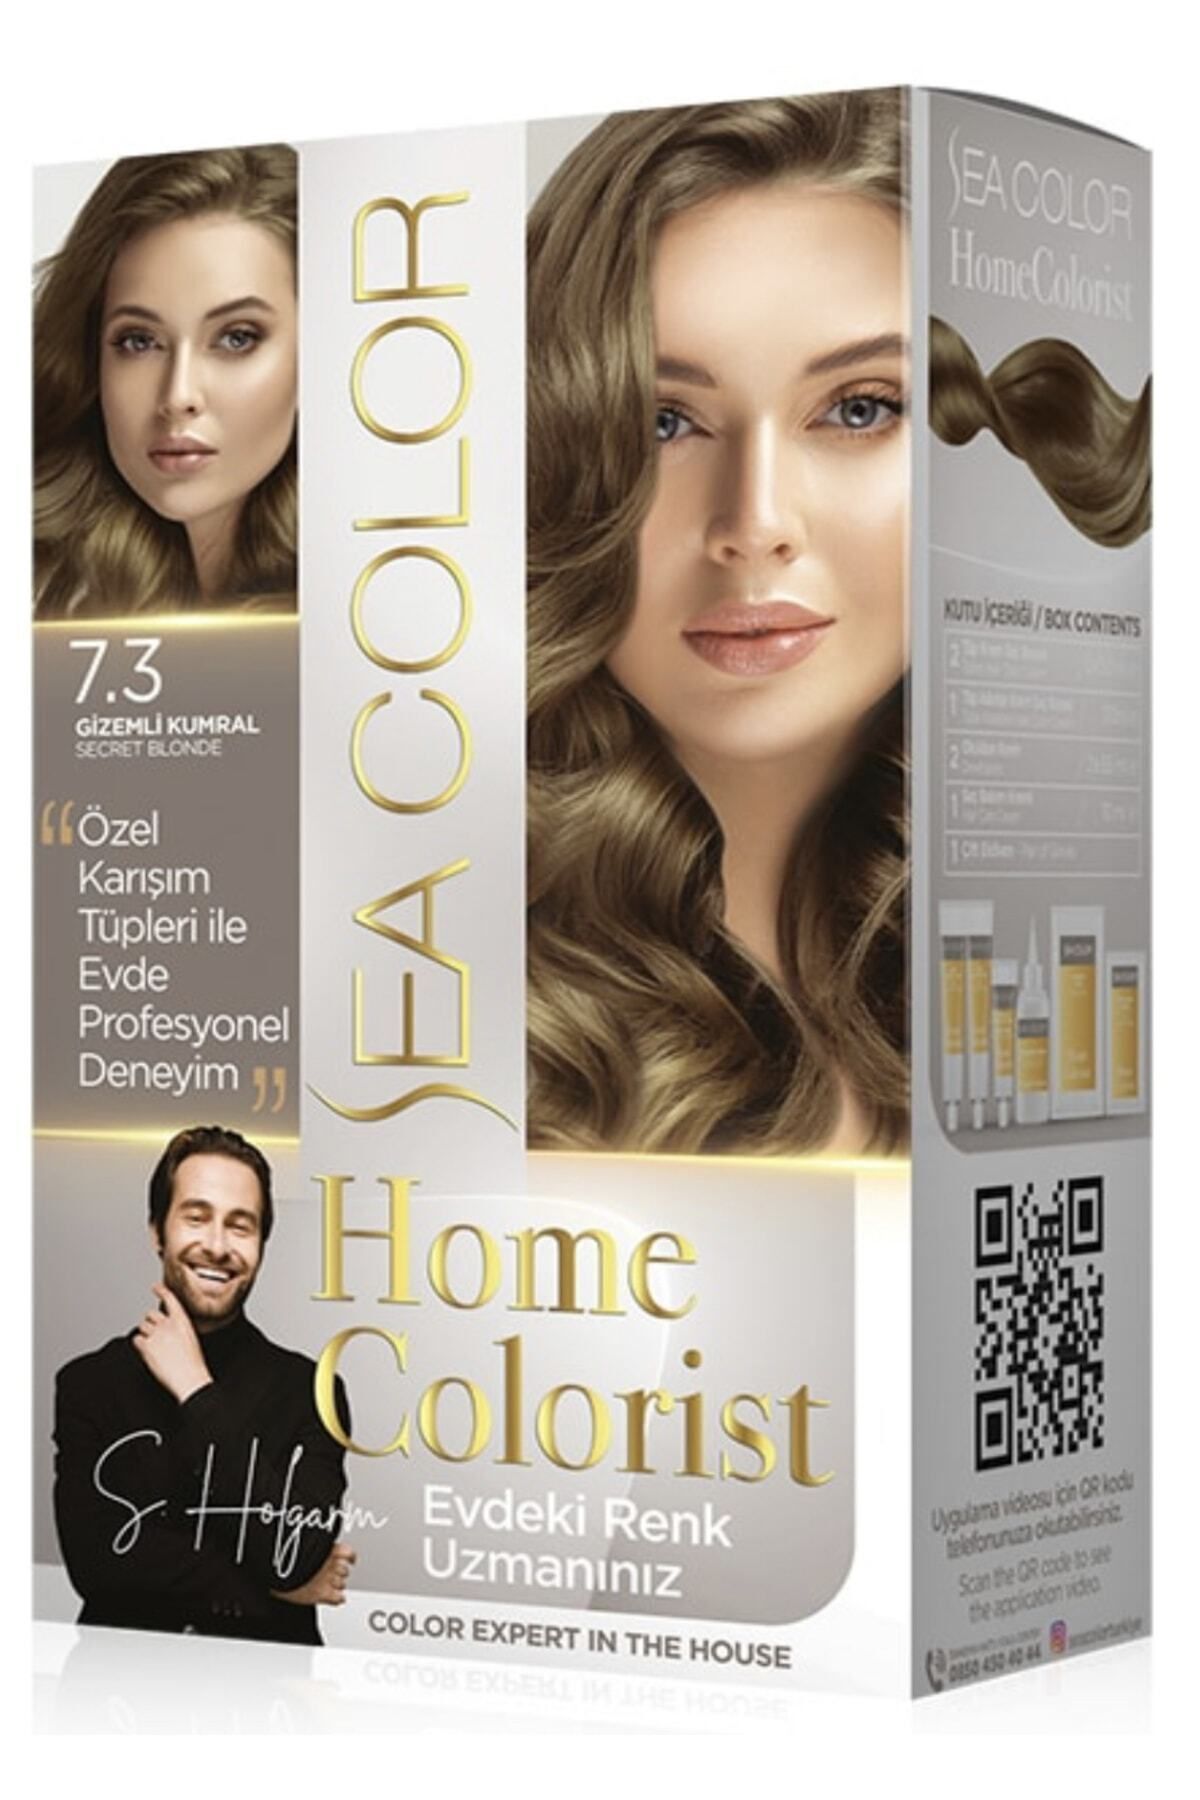 Sea Color Homecolorist 7.3 Gizemli Kumral Saç Boyası